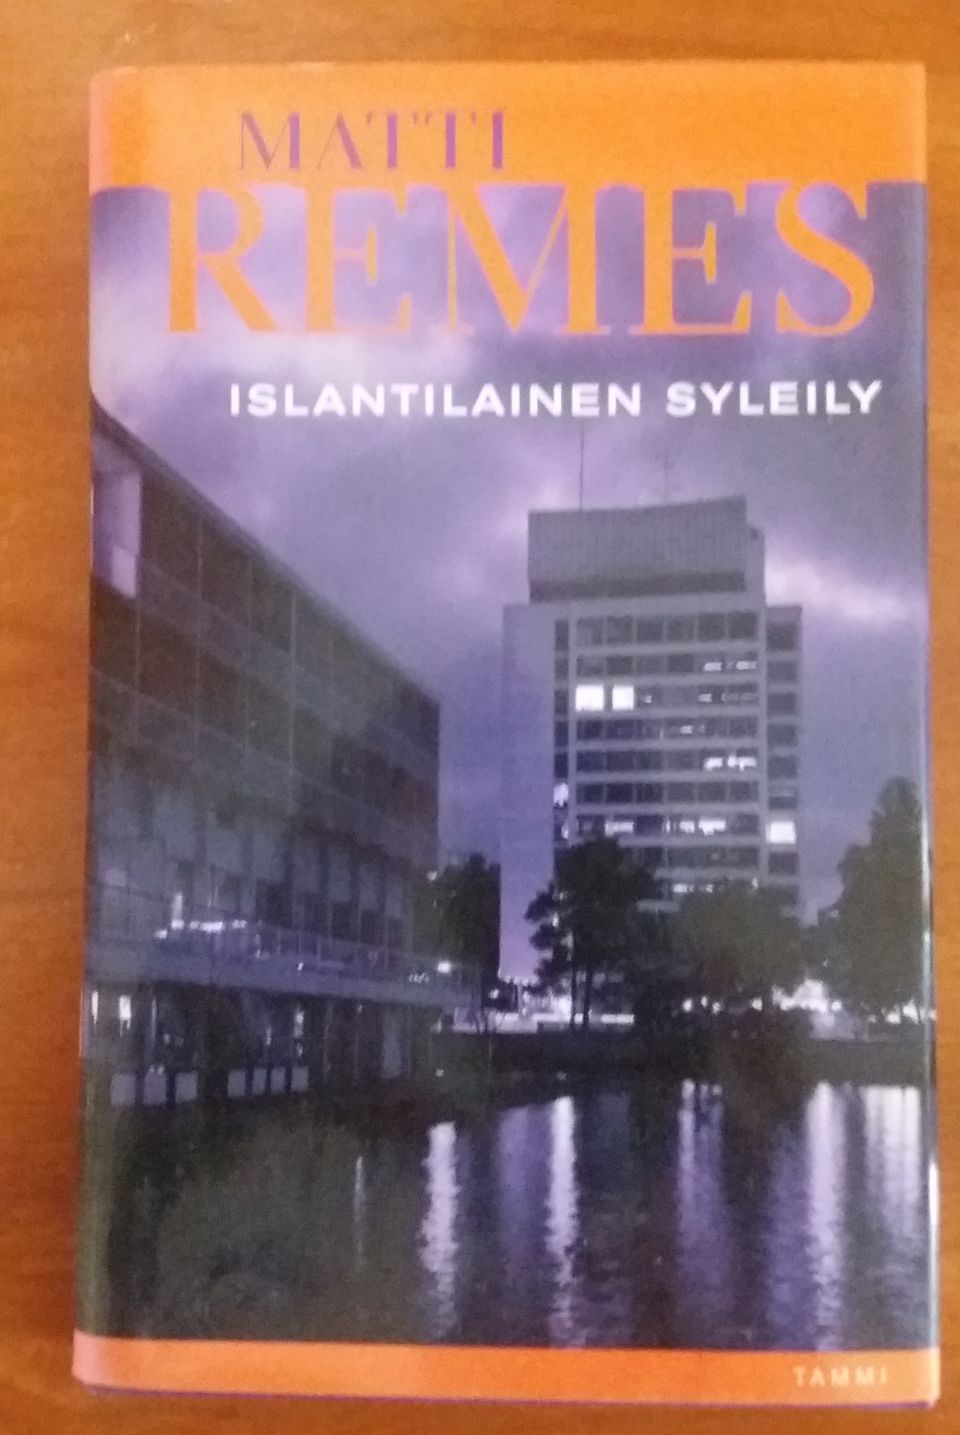 Matti Remes ISLANTILAINEN SYLEILY Tammi 2006